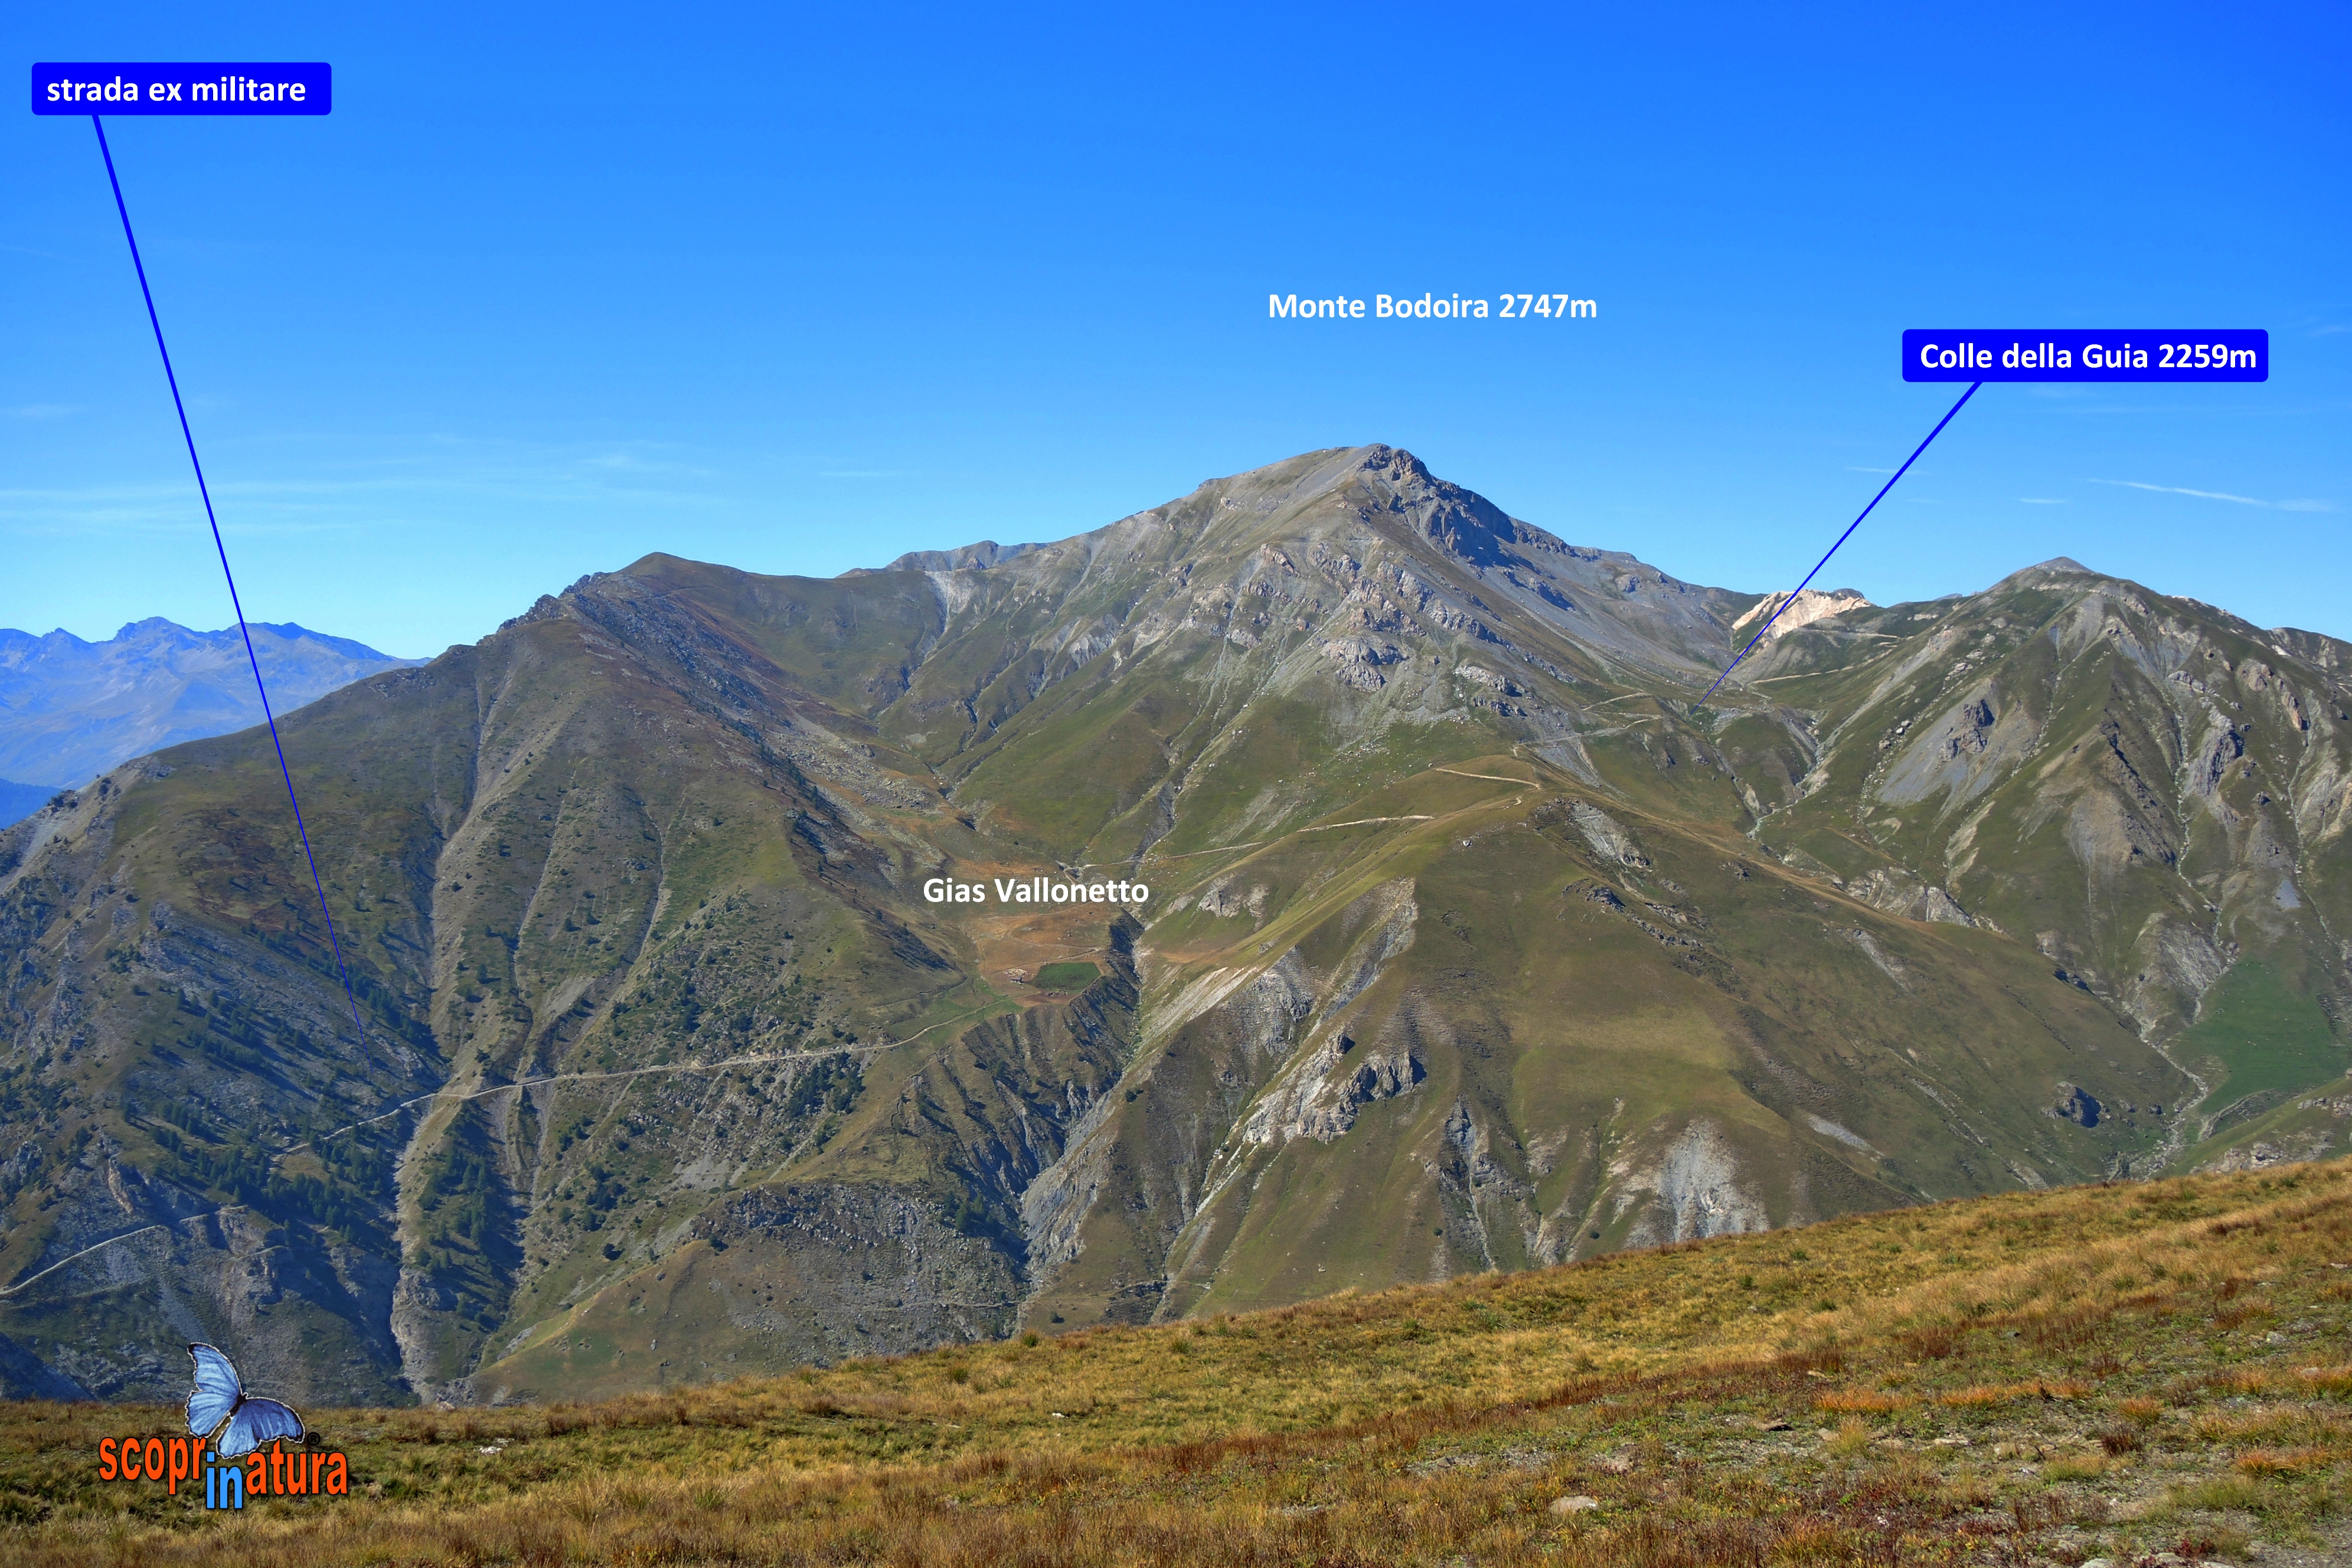 panoramica al Gias Vallonetto  e Monte Bodoira 2747m  Colle della Guia 2259m